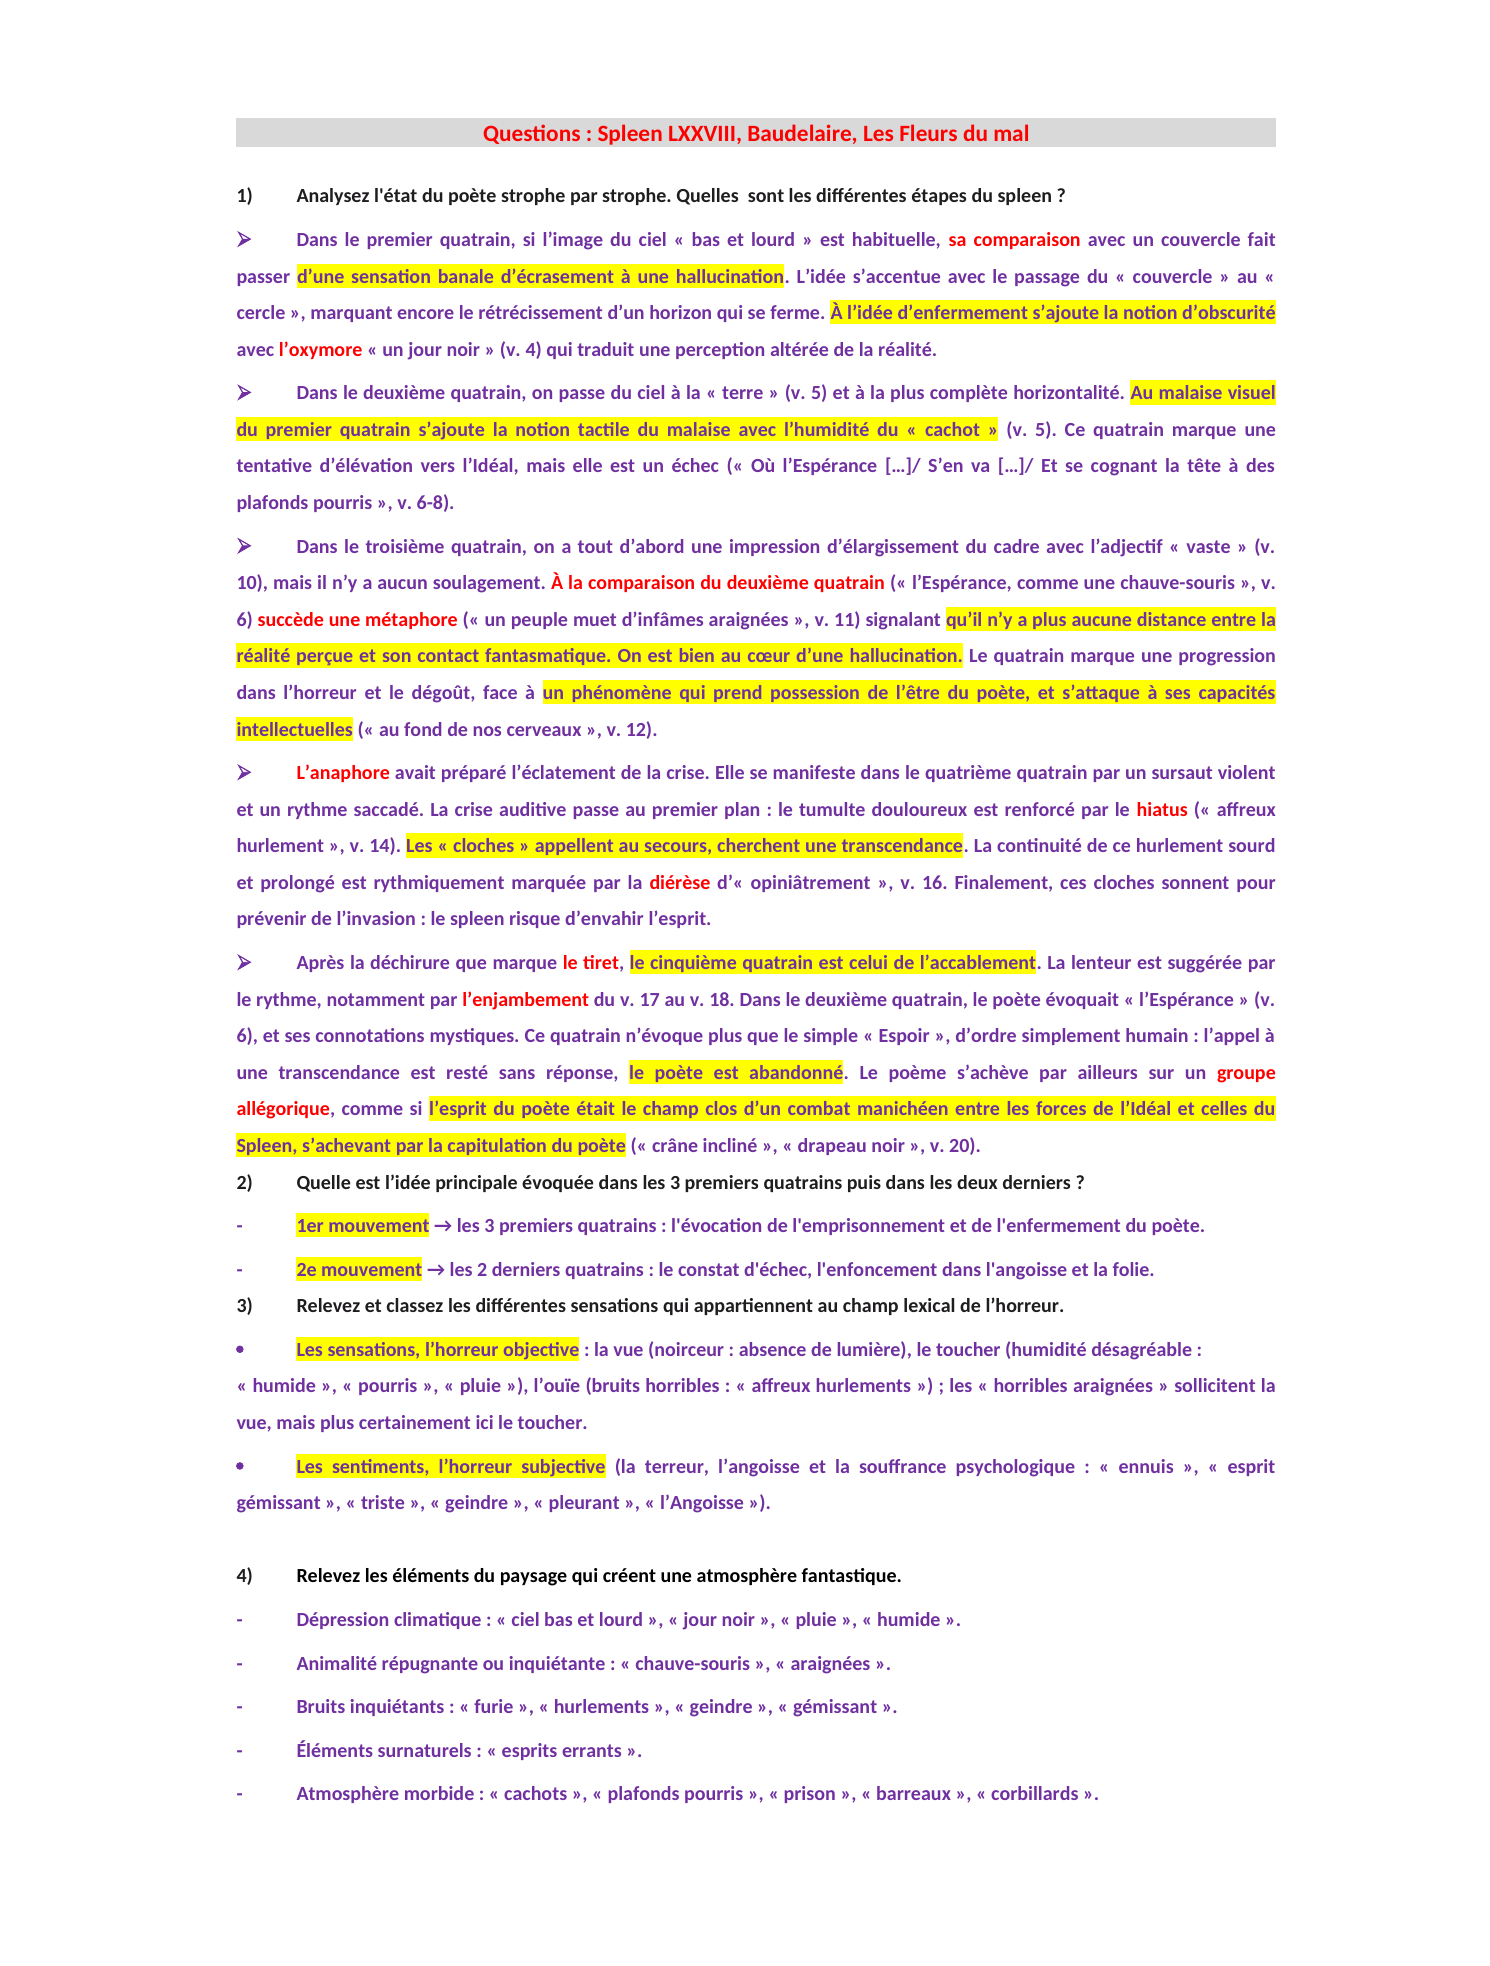 Prévisualisation du document Baudelaire Questions : Spleen LXXVIII, Baudelaire, Les Fleurs du mal